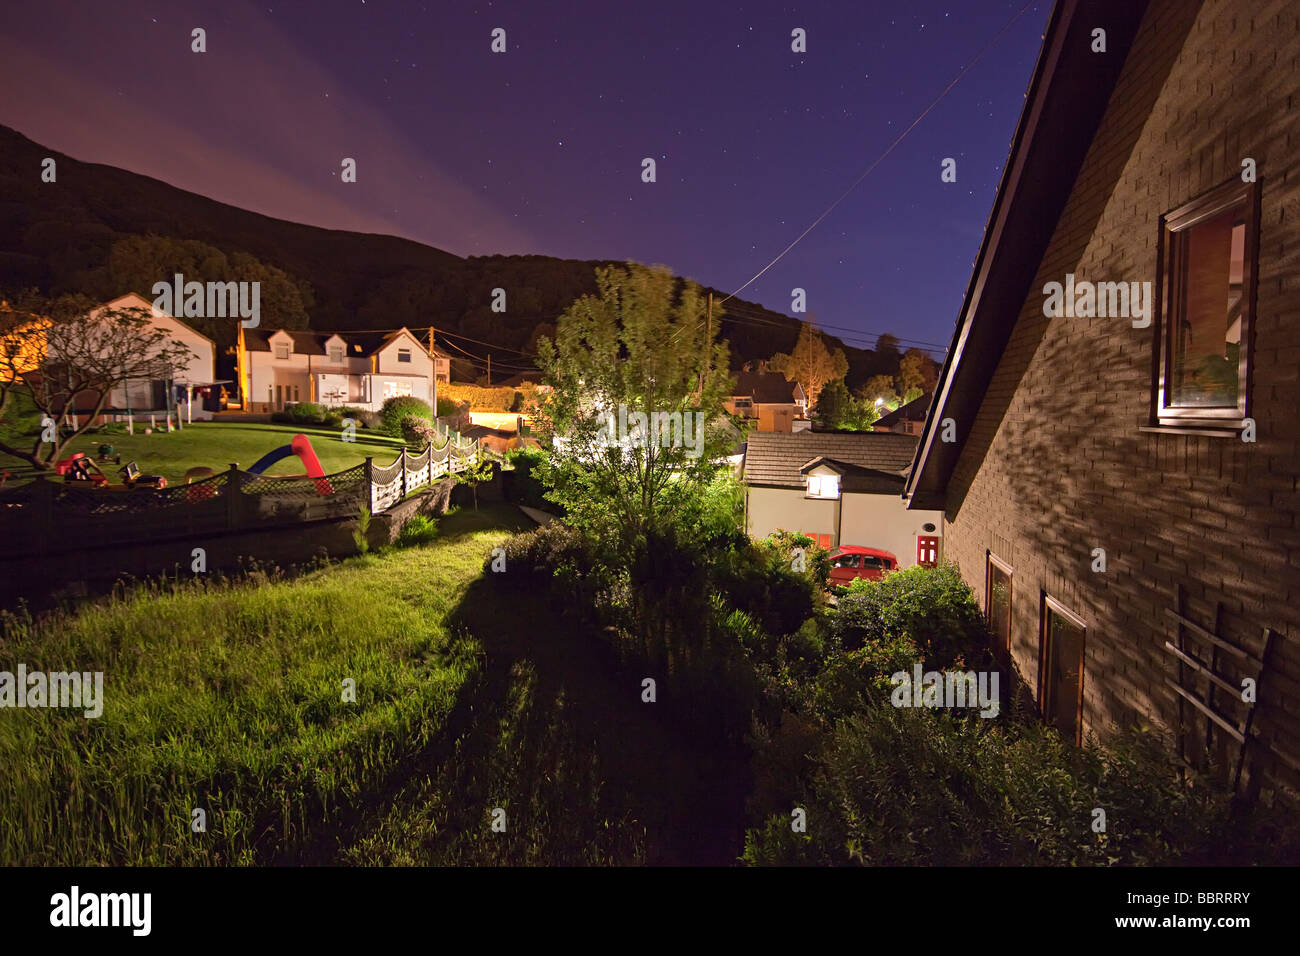 Maison jardin et bâtiments dans le village de nuit avec la lumière d'un lampadaire Llanfoist Wales UK Banque D'Images